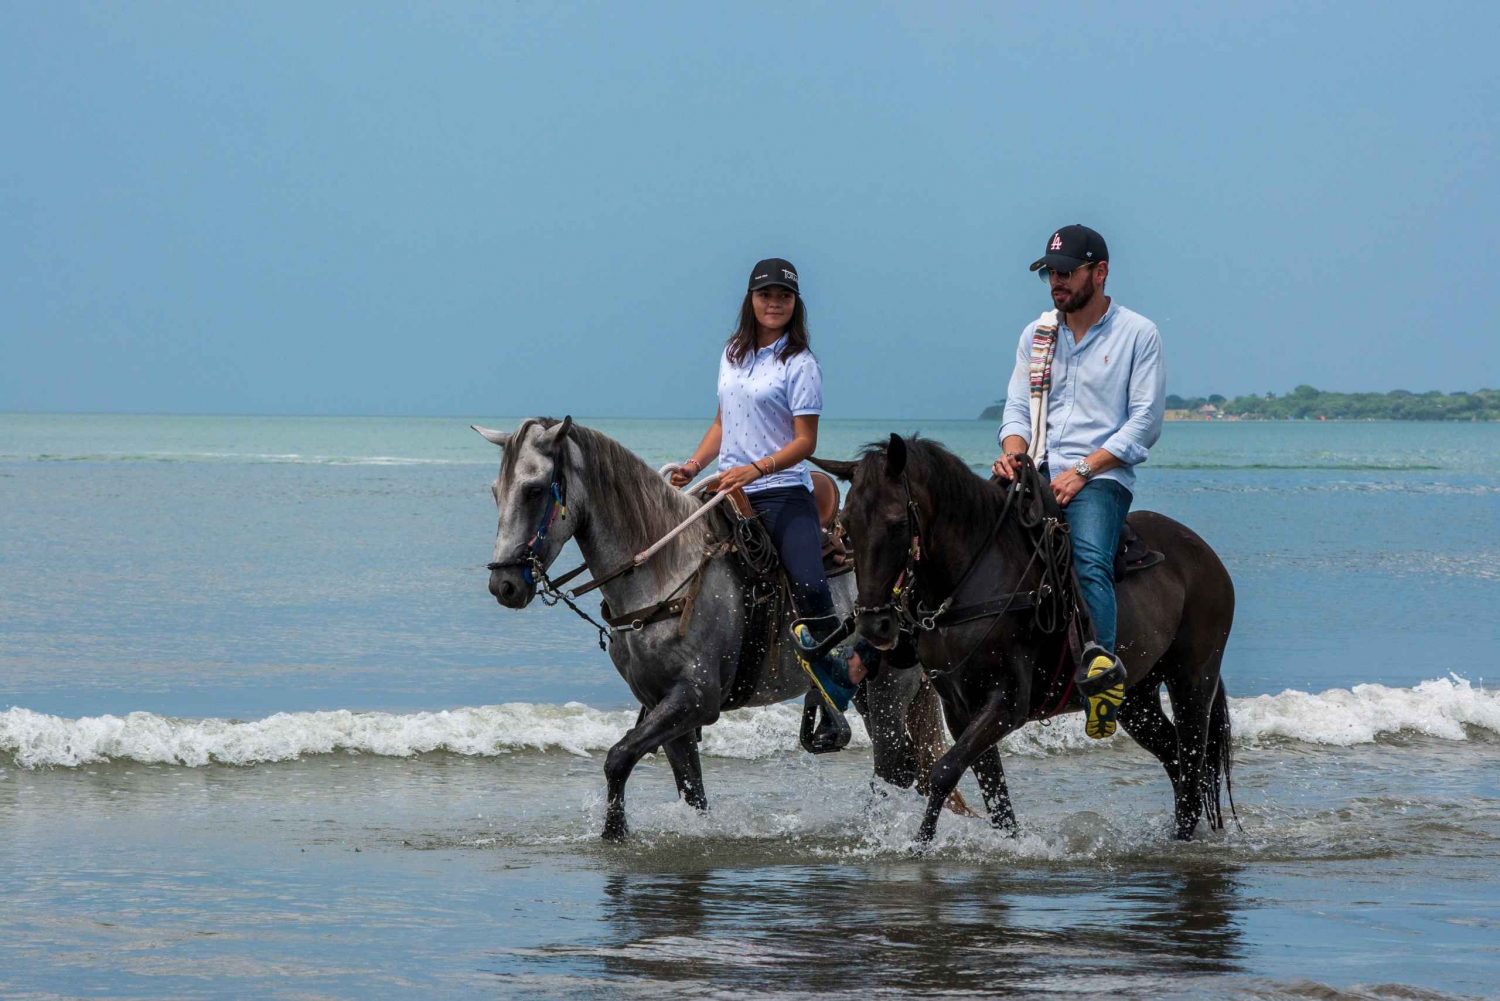 Cartagena: Paseo a caballo por la playa y cultura ecuestre colombiana